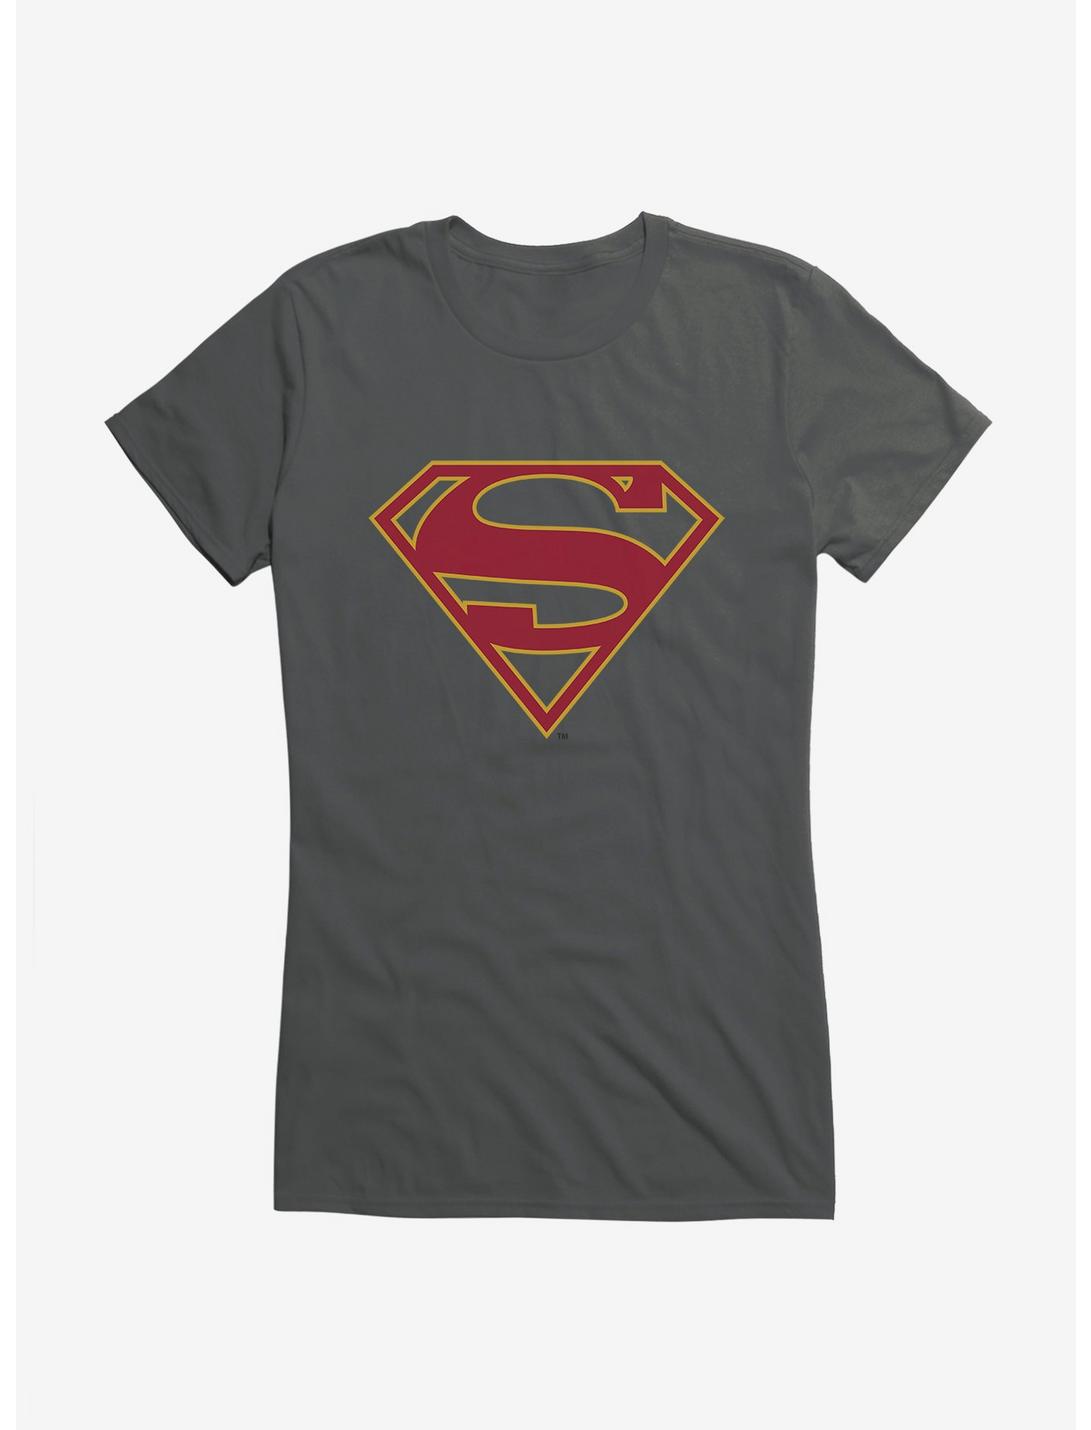 DC Comics Supergirl Classic Logo Girls T-Shirt, CHARCOAL, hi-res